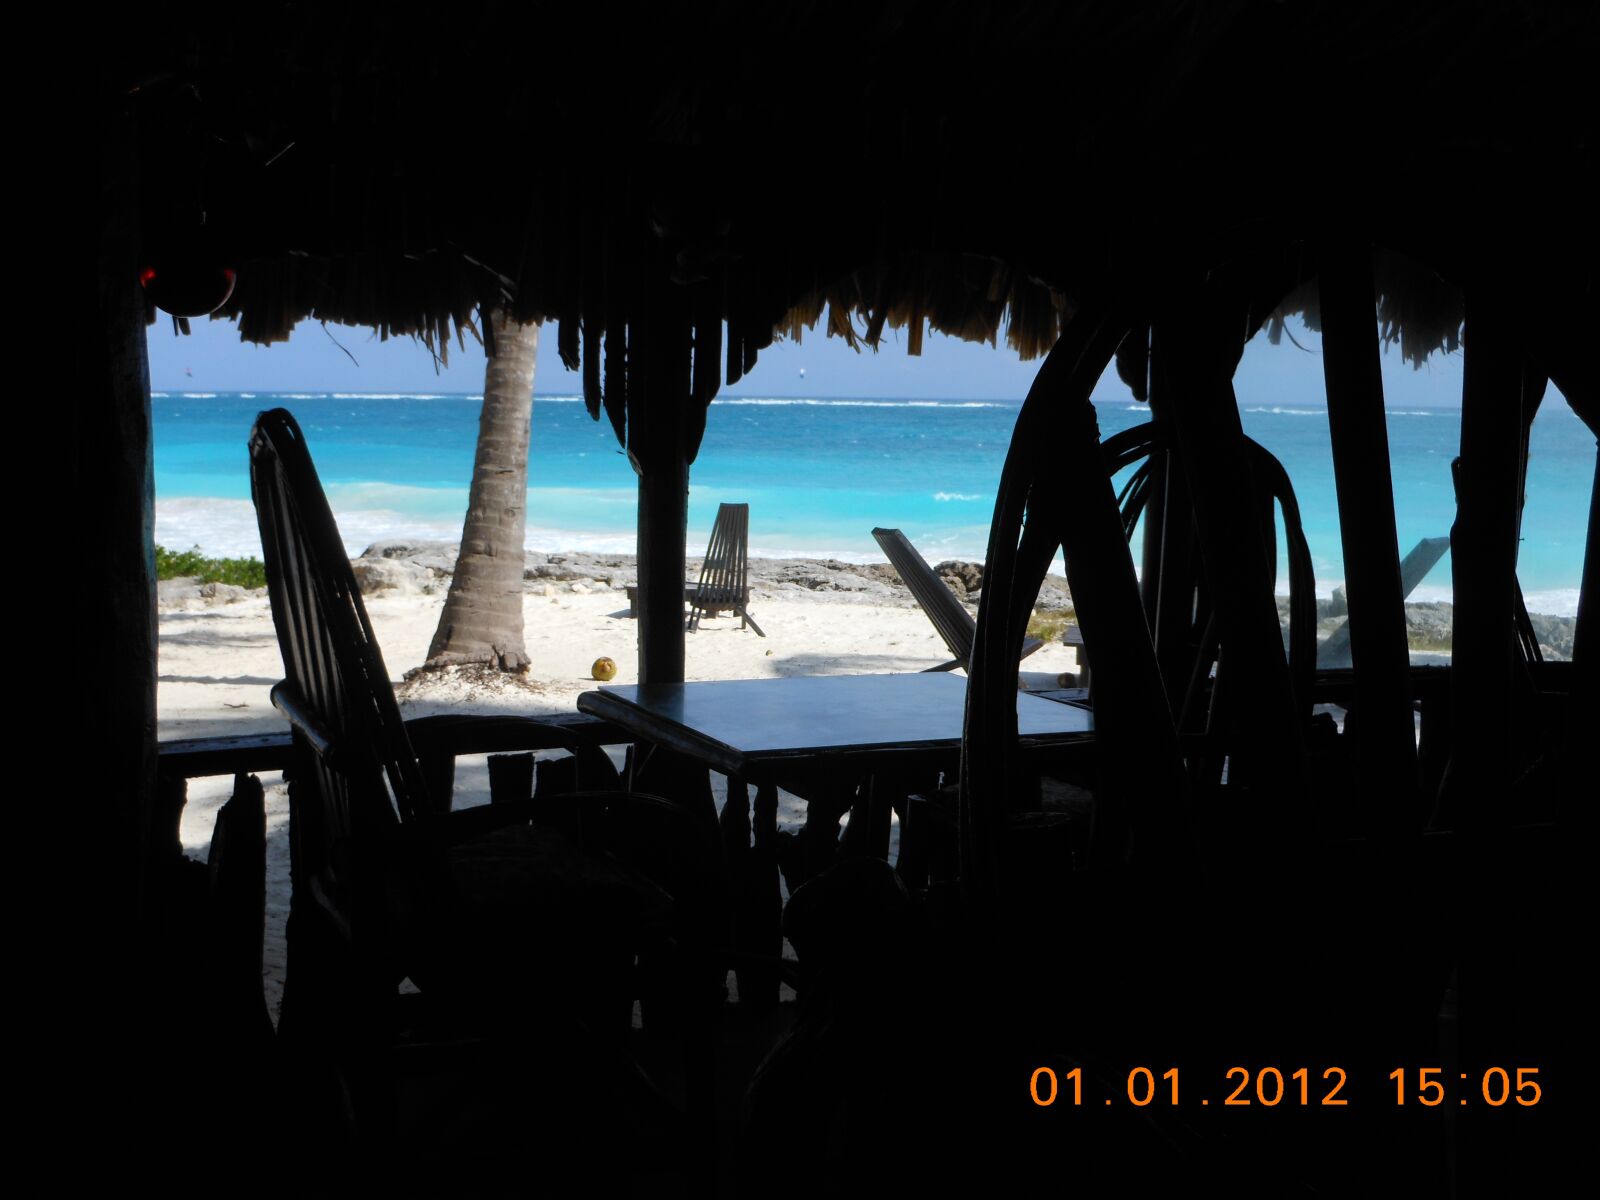 Nikon Coolpix S6100 sample photo. Mexico, beach, tropical beach photography